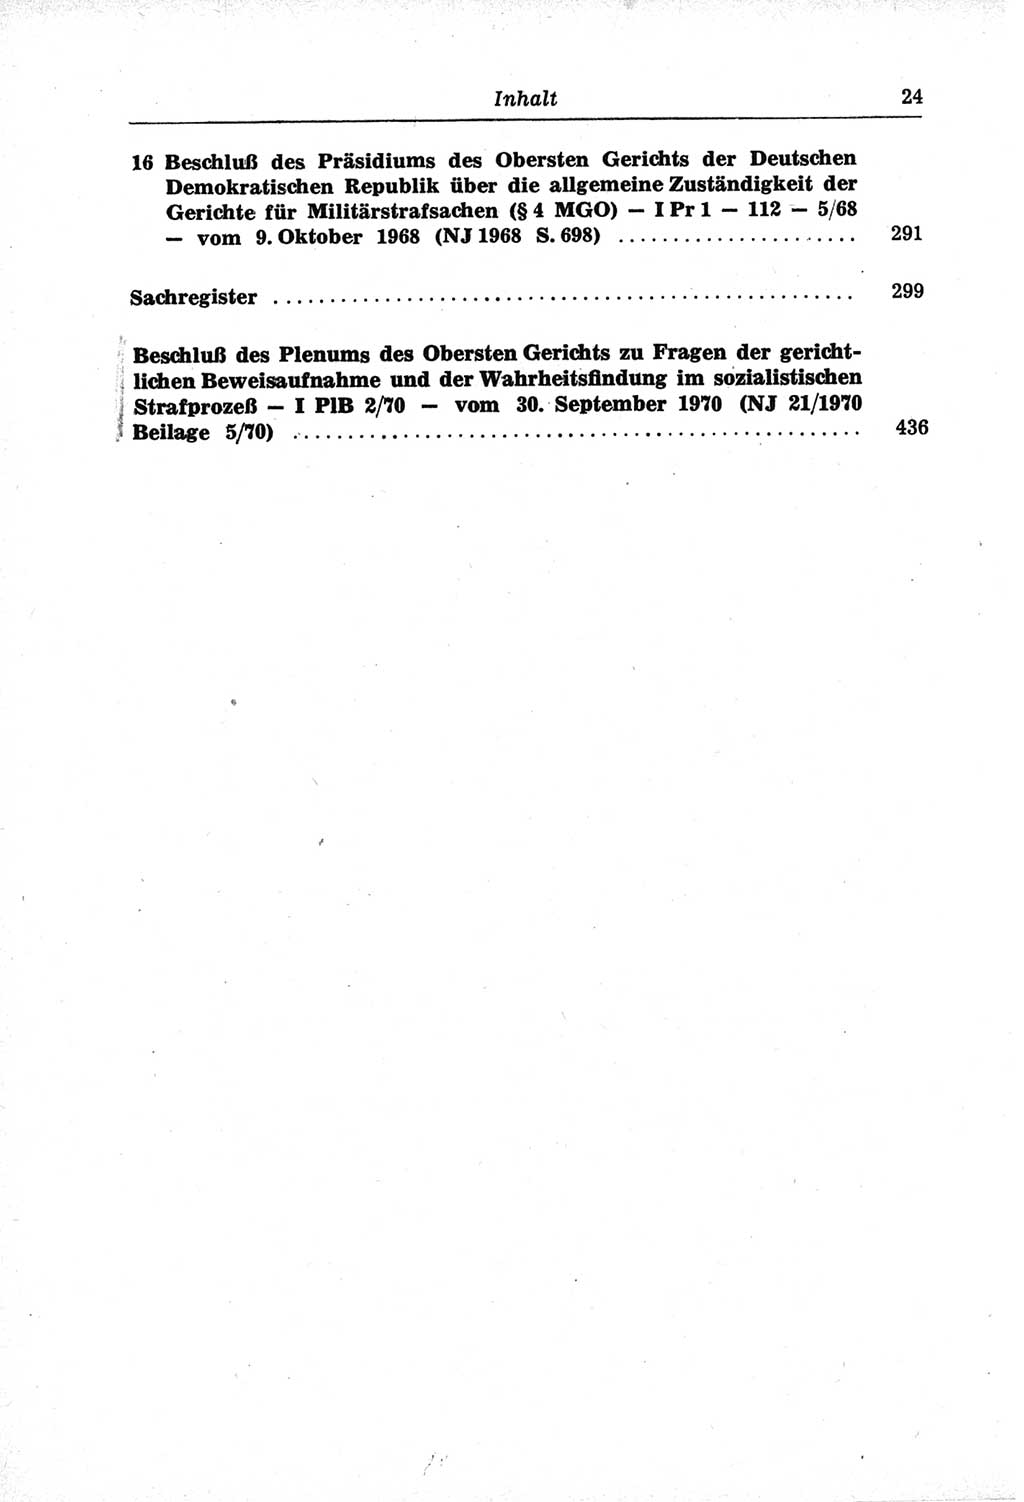 Strafprozeßordnung (StPO) der Deutschen Demokratischen Republik (DDR) und angrenzende Gesetze und Bestimmungen 1968, Seite 24 (StPO Ges. Bstgn. DDR 1968, S. 24)